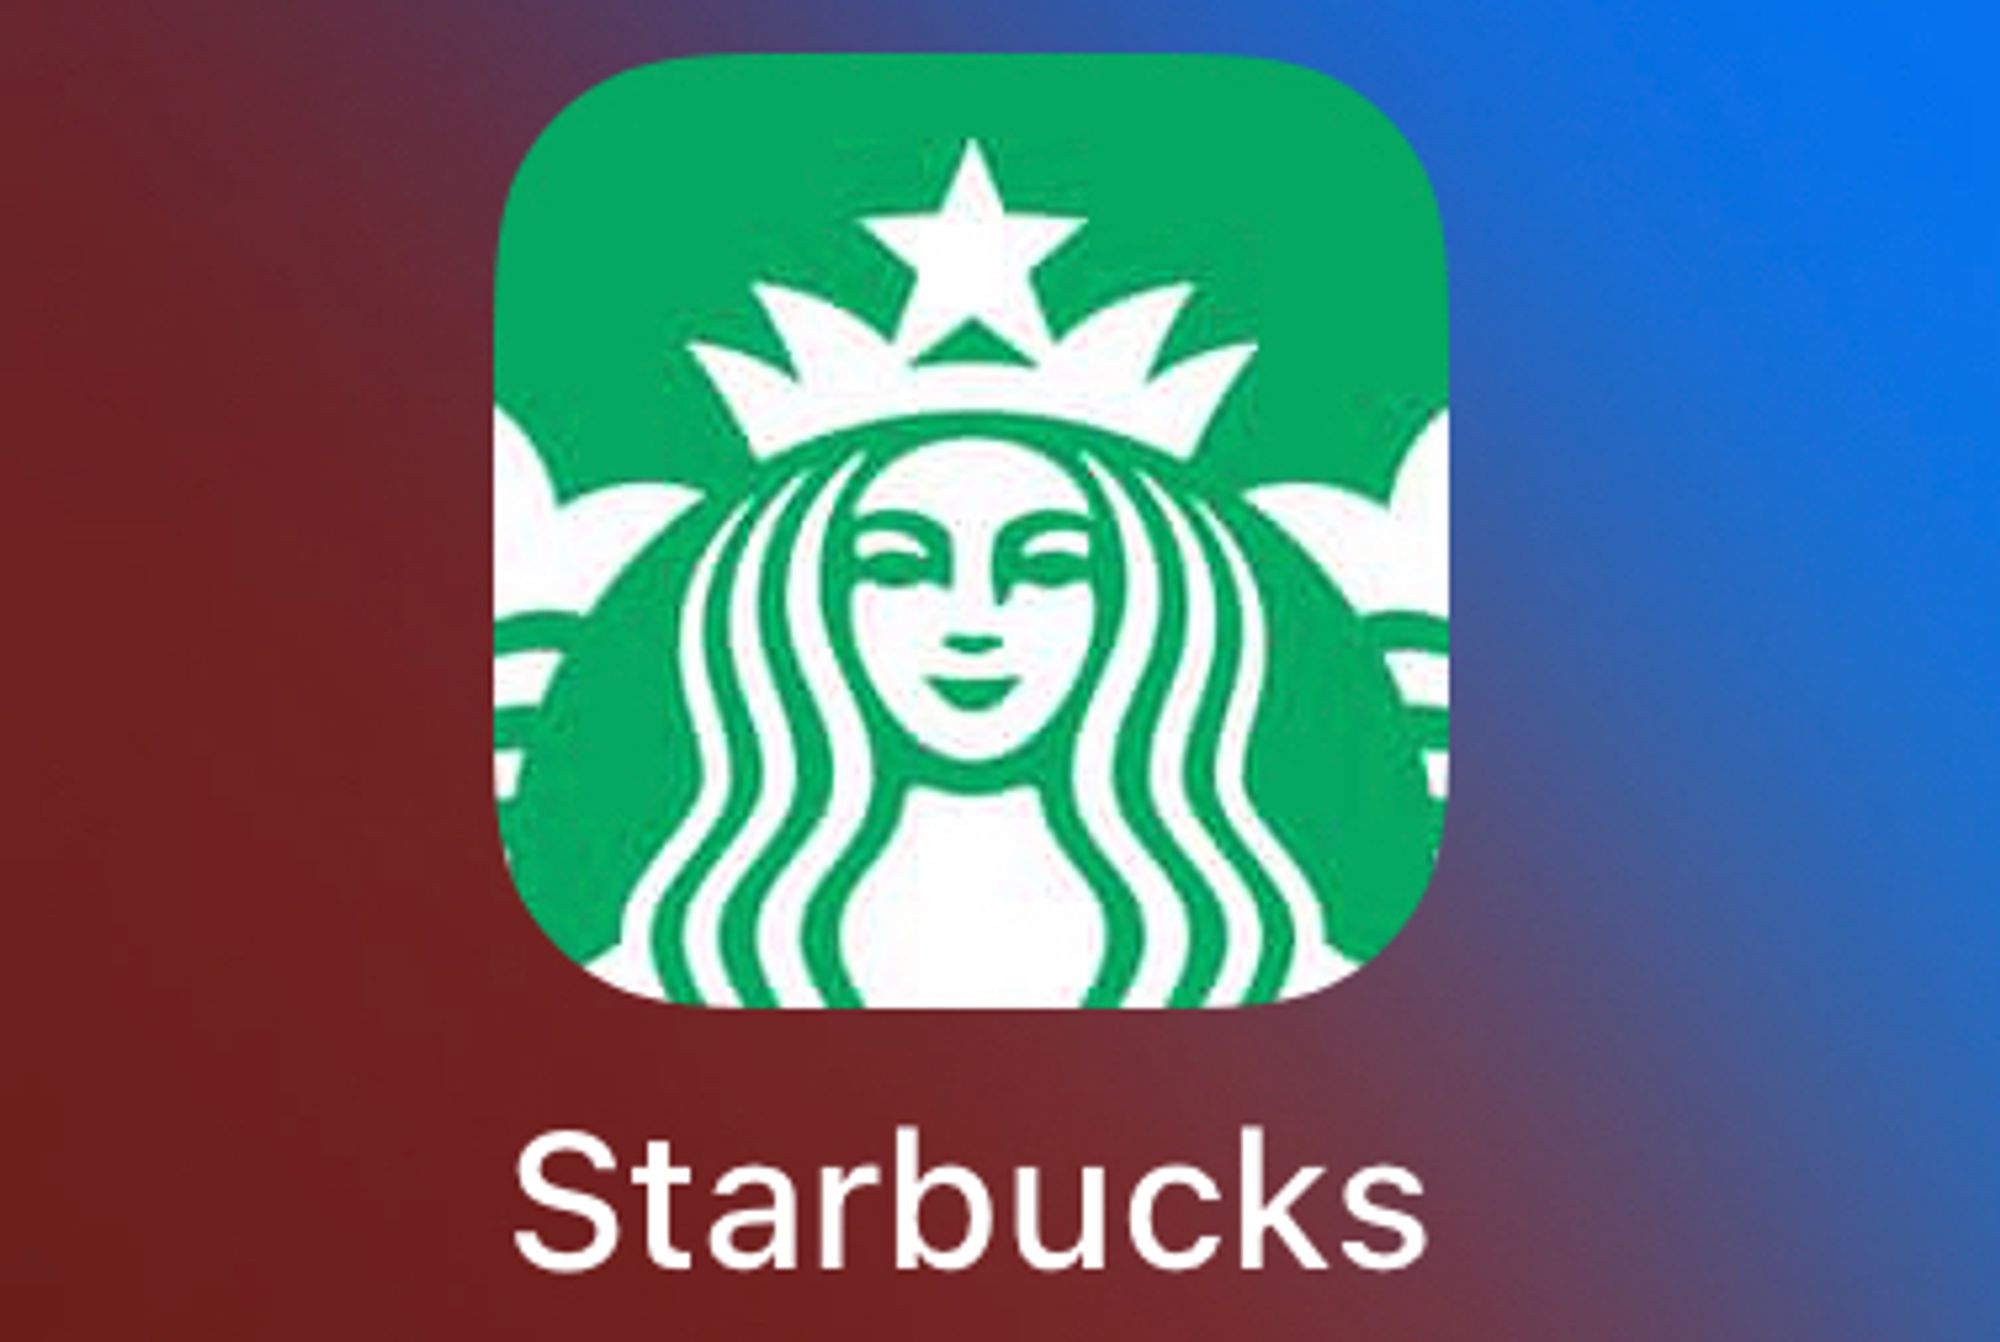 아이폰 홈 화면에 추가된 Starbucks의 앱(PWA)